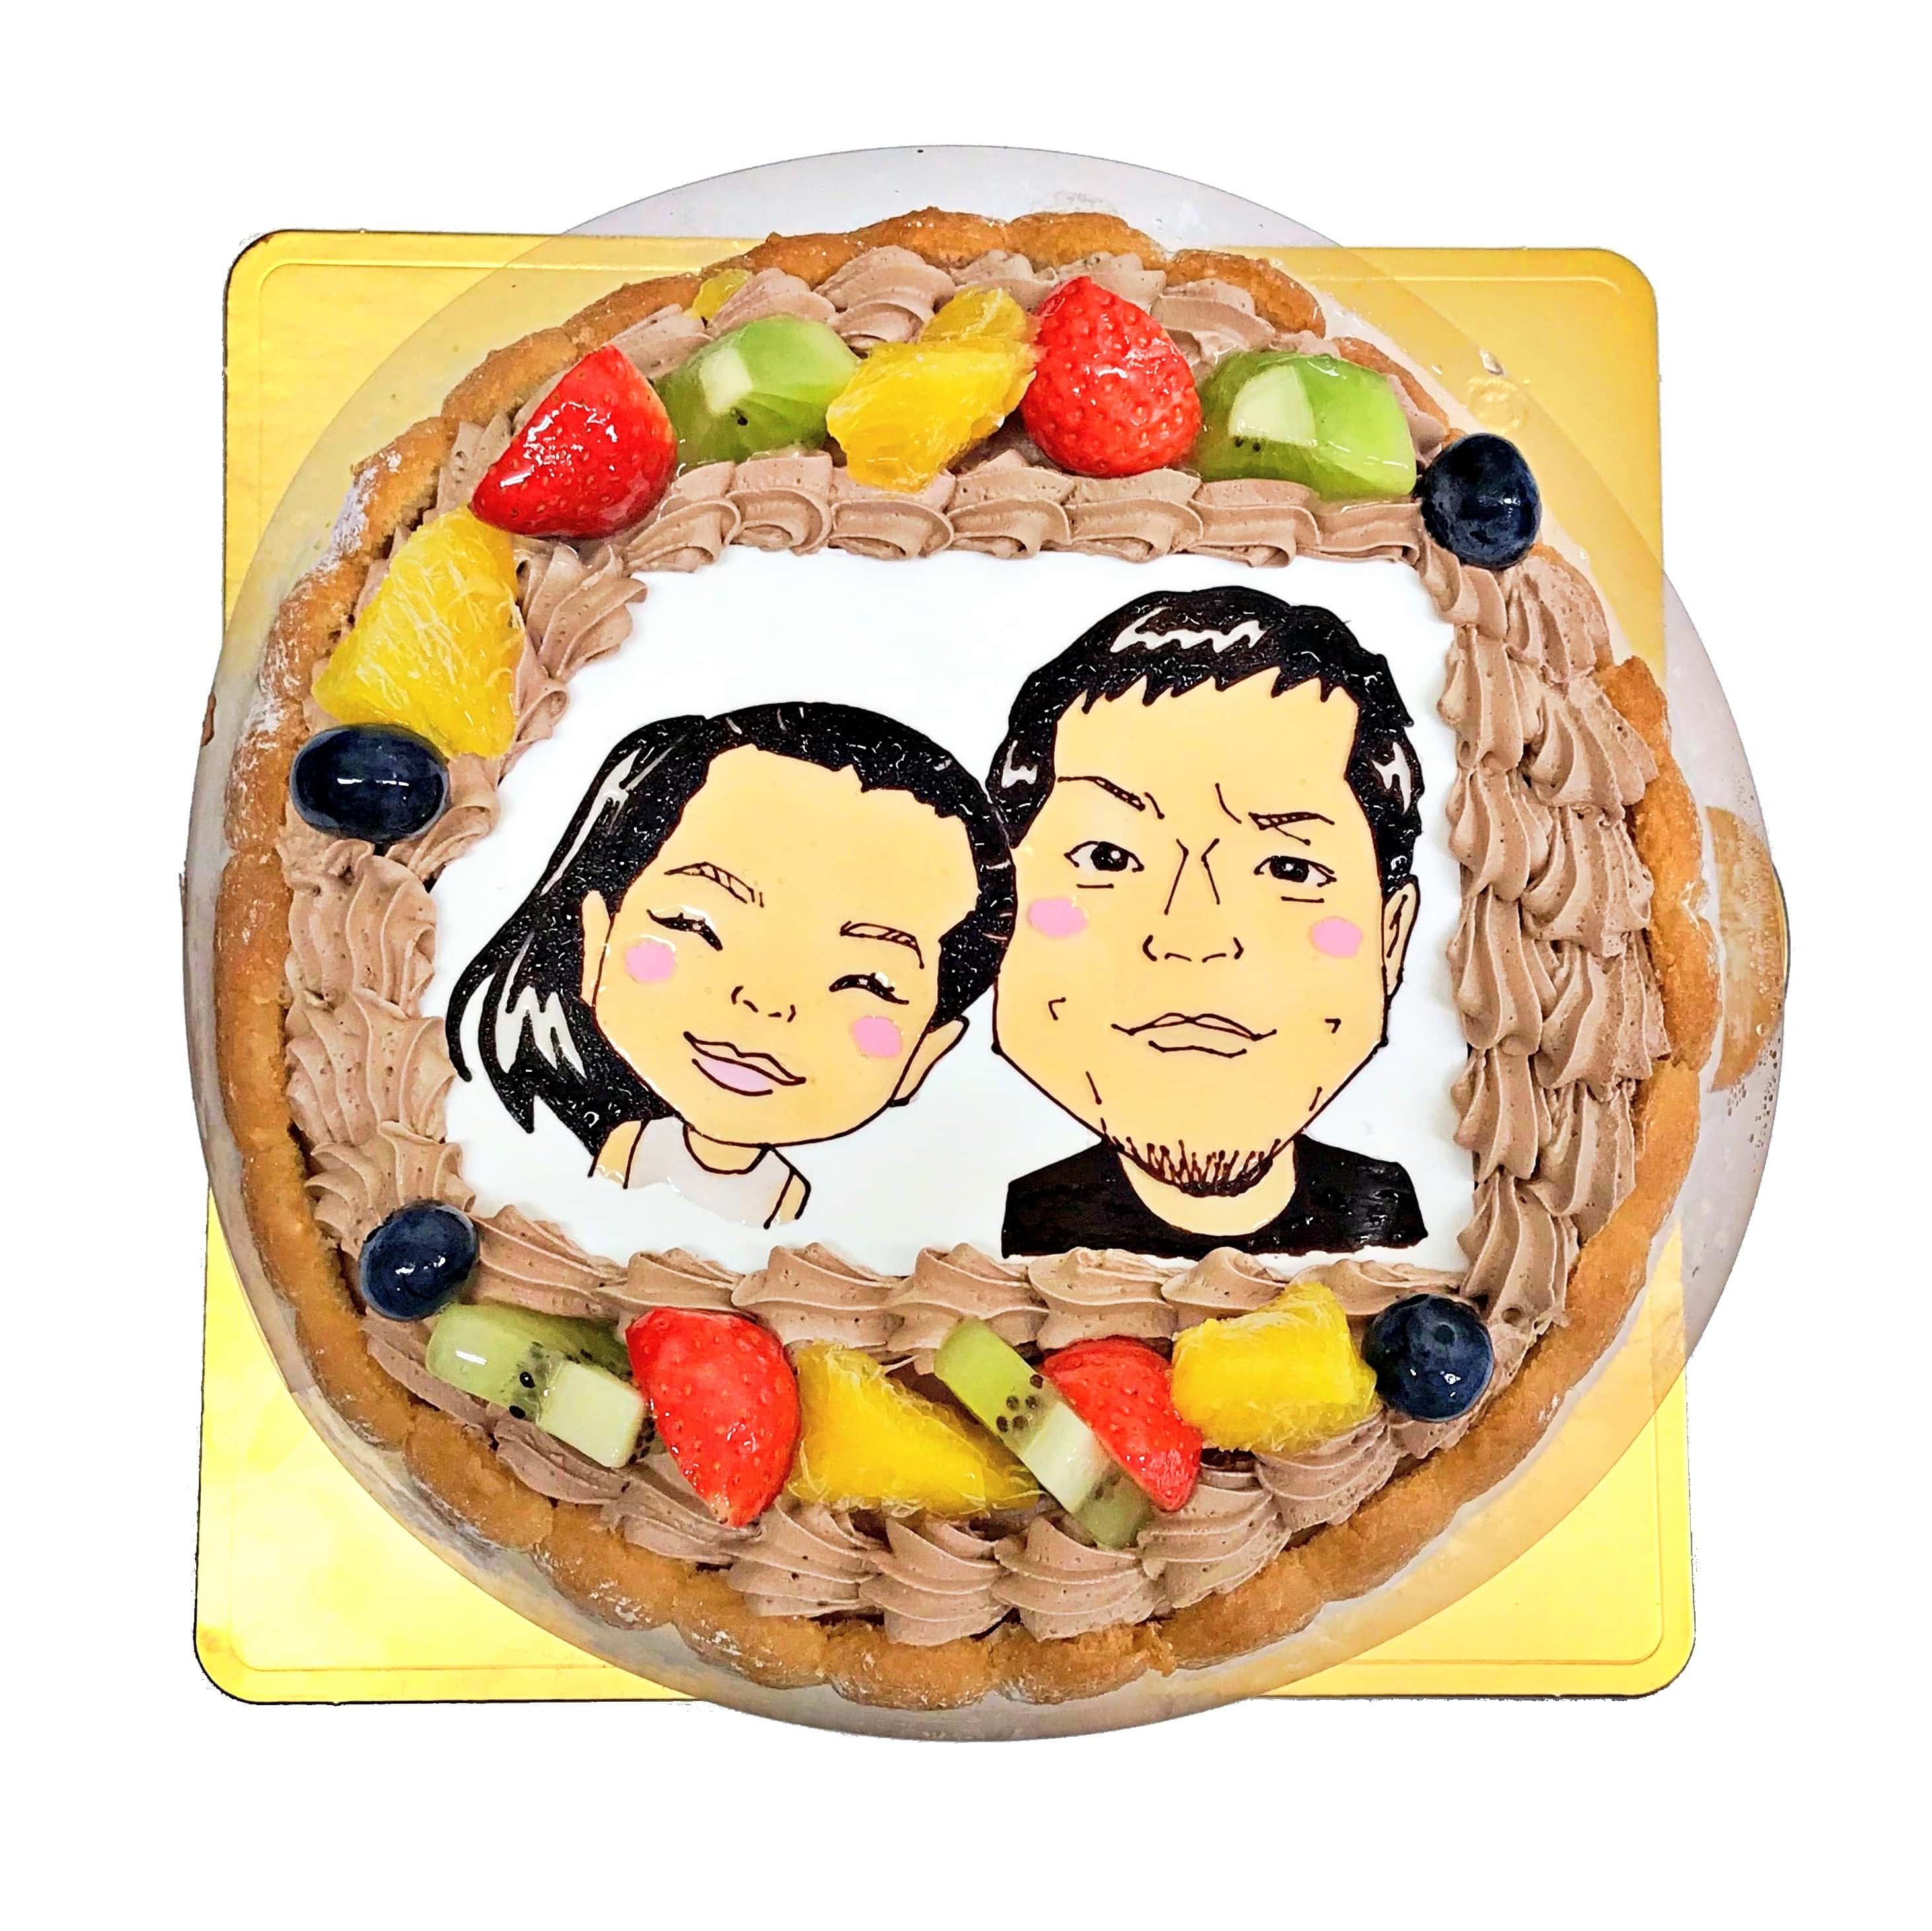 似顔絵ケーキ Mサイズ キャラクターケーキ通販fundeco ファンデコ